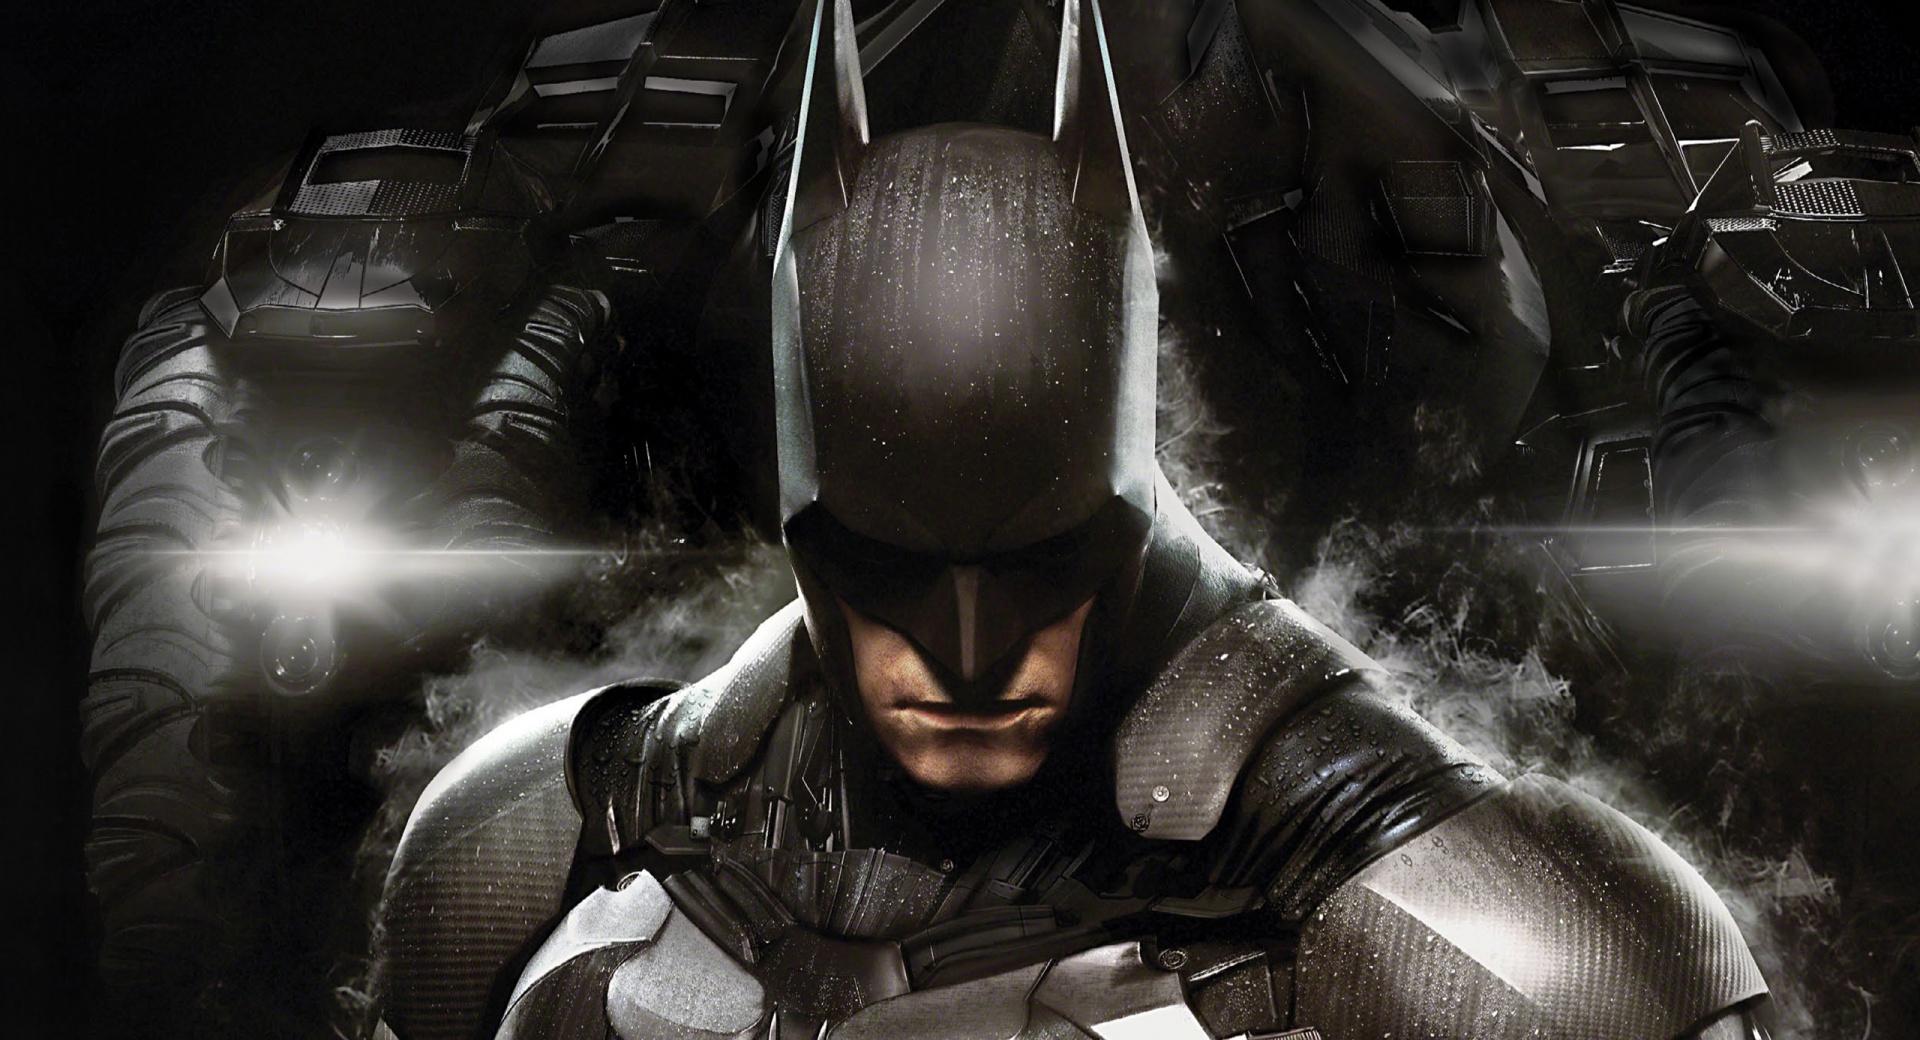 2014 Batman Arkham Knight at 1024 x 1024 iPad size wallpapers HD quality